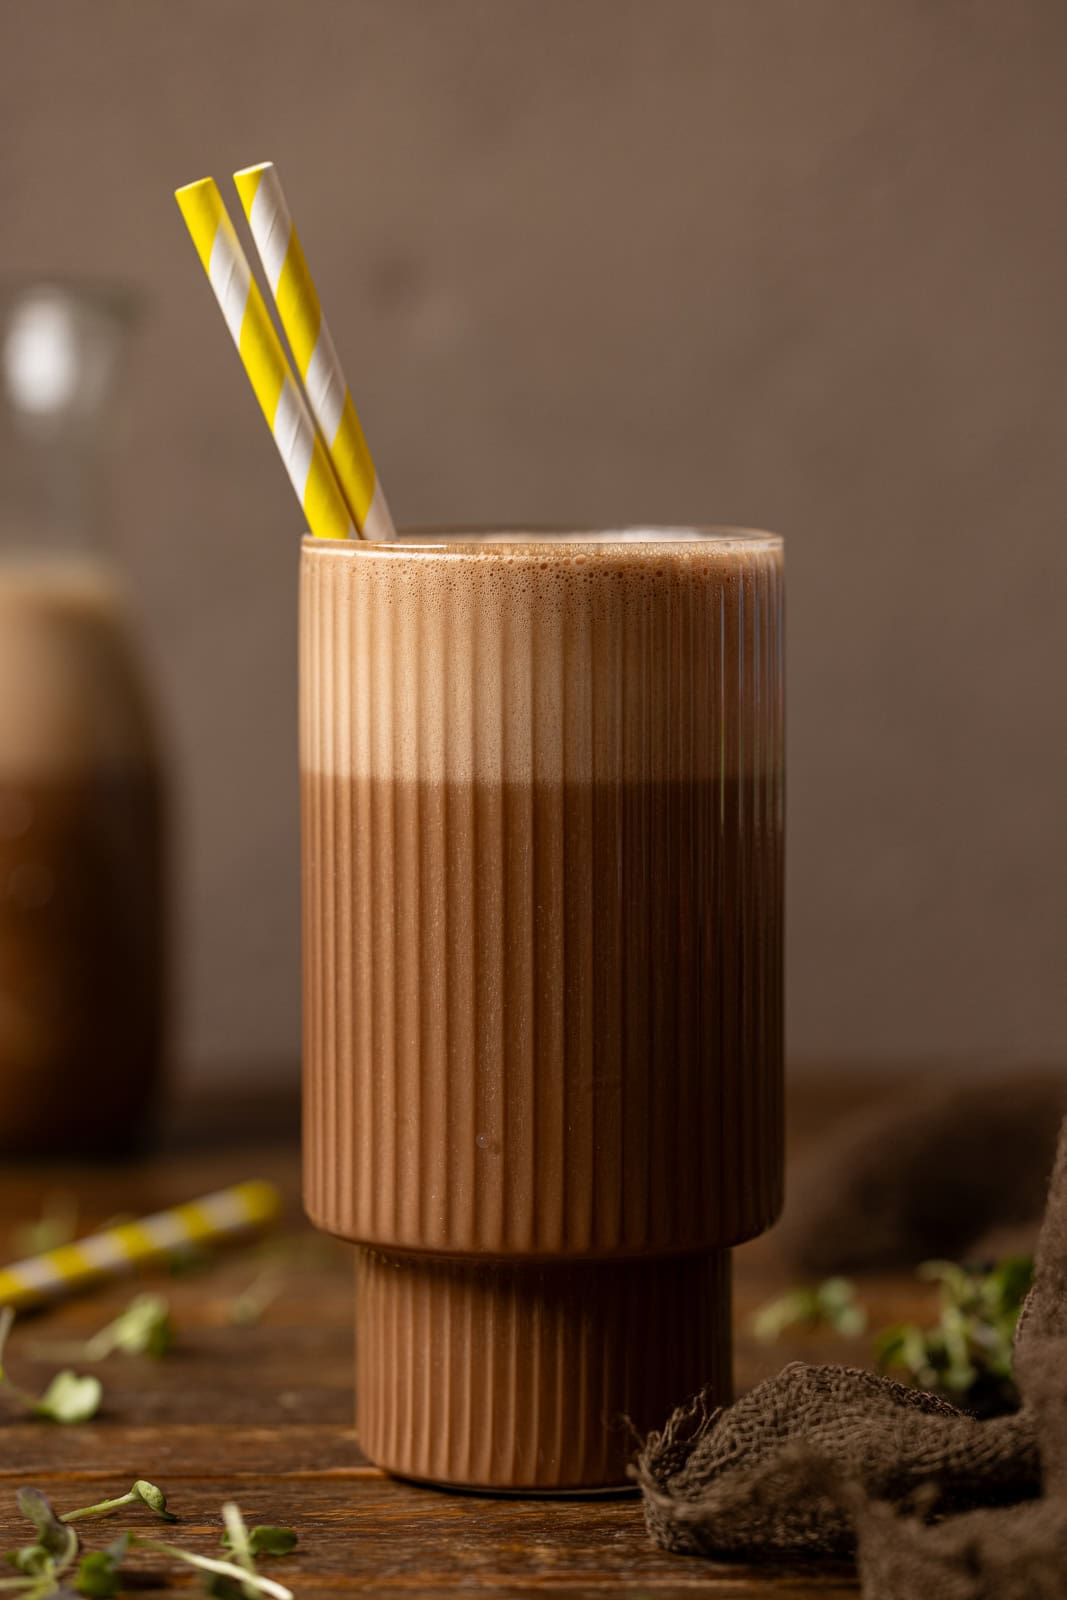 Glass of chocolate milk with yellow stripe straws. 